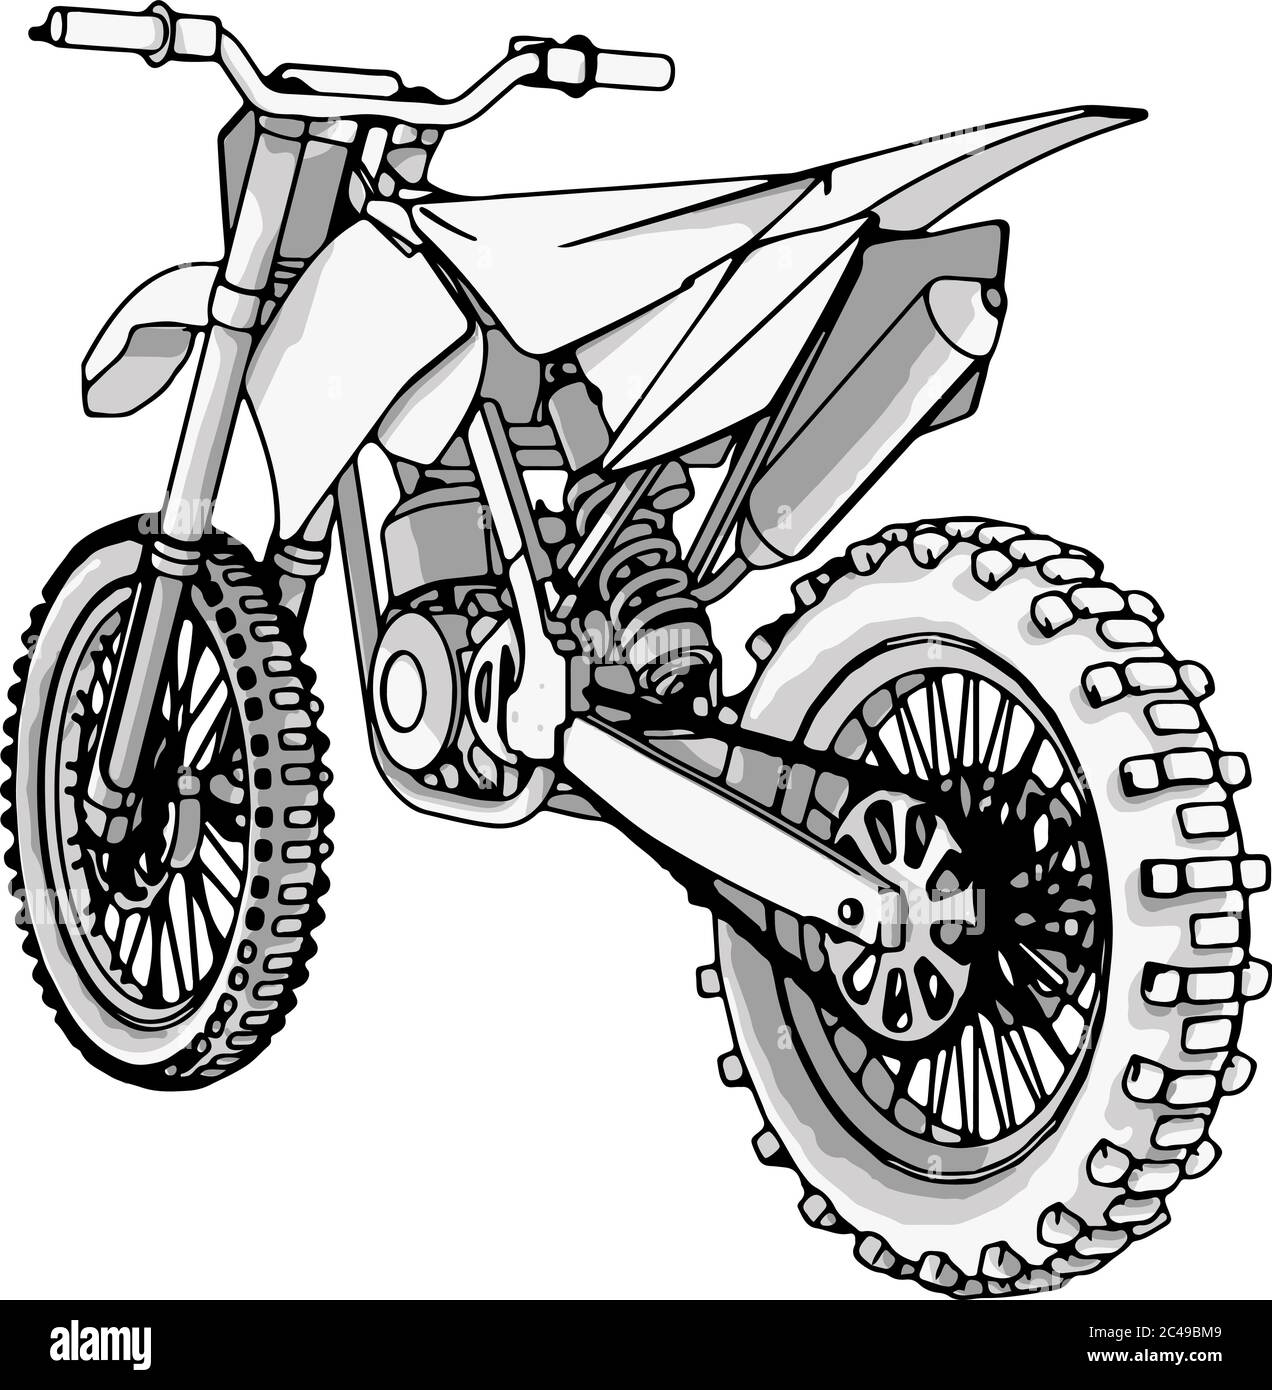 Skizze Motorrad Vektor auf einem weißen Hintergrund Stock-Vektorgrafik -  Alamy